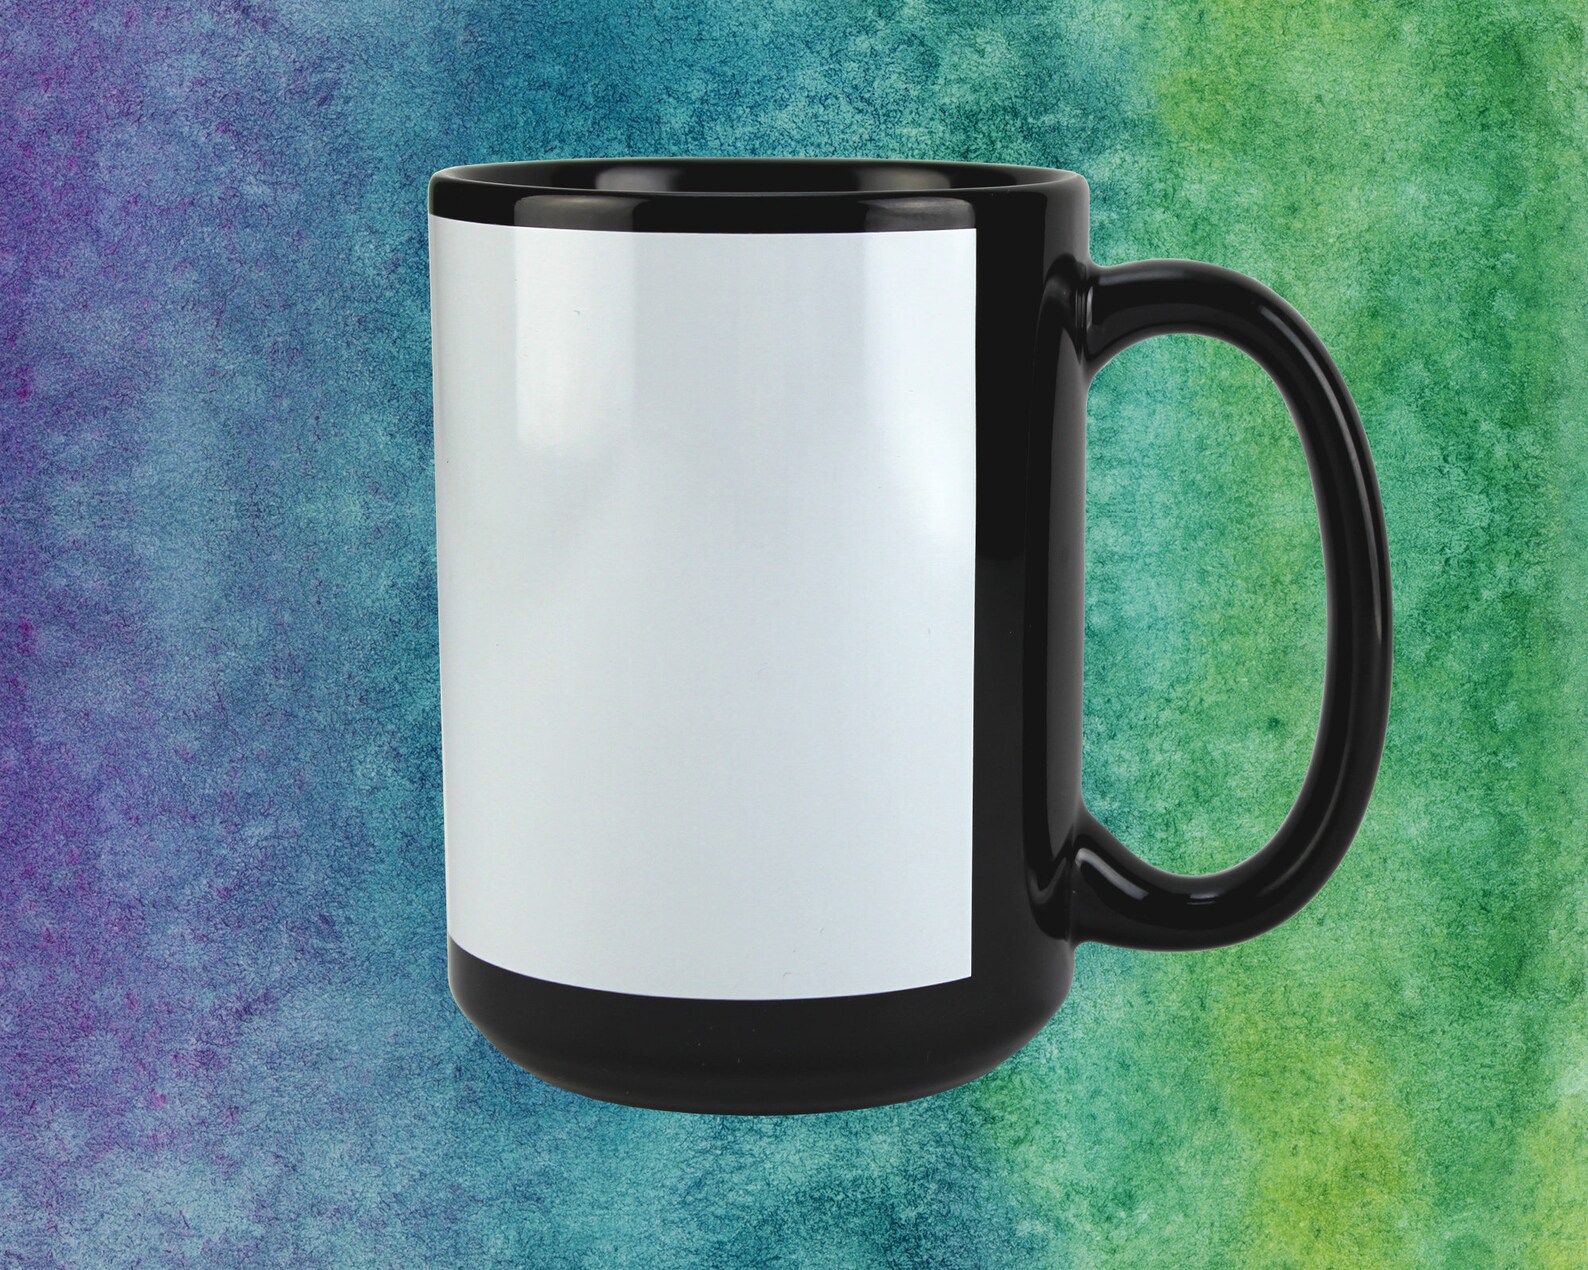 mug-template-for-15oz-mug-black-imprintable-for-photoshop-and-corel-etsy